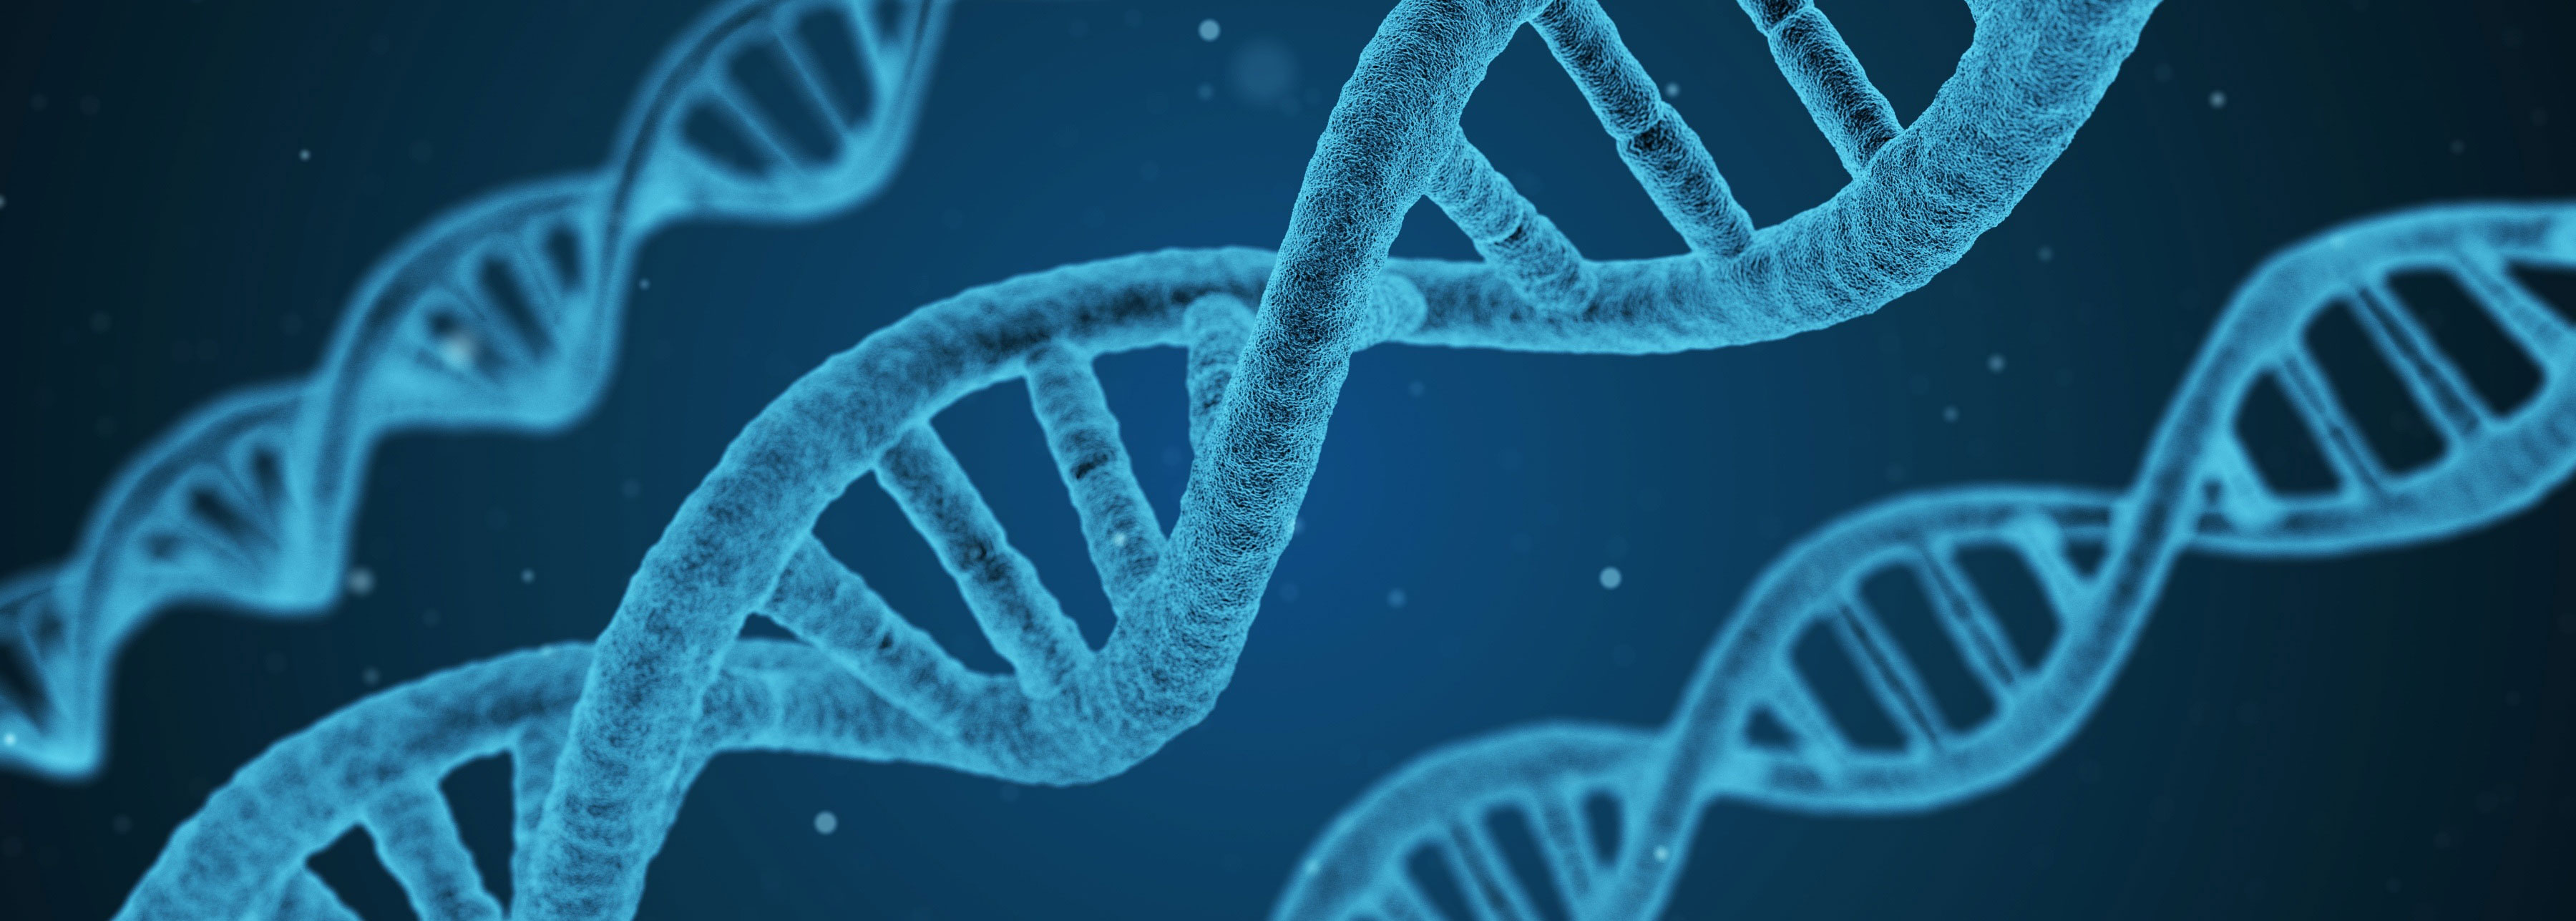 Blue image of DNA strands